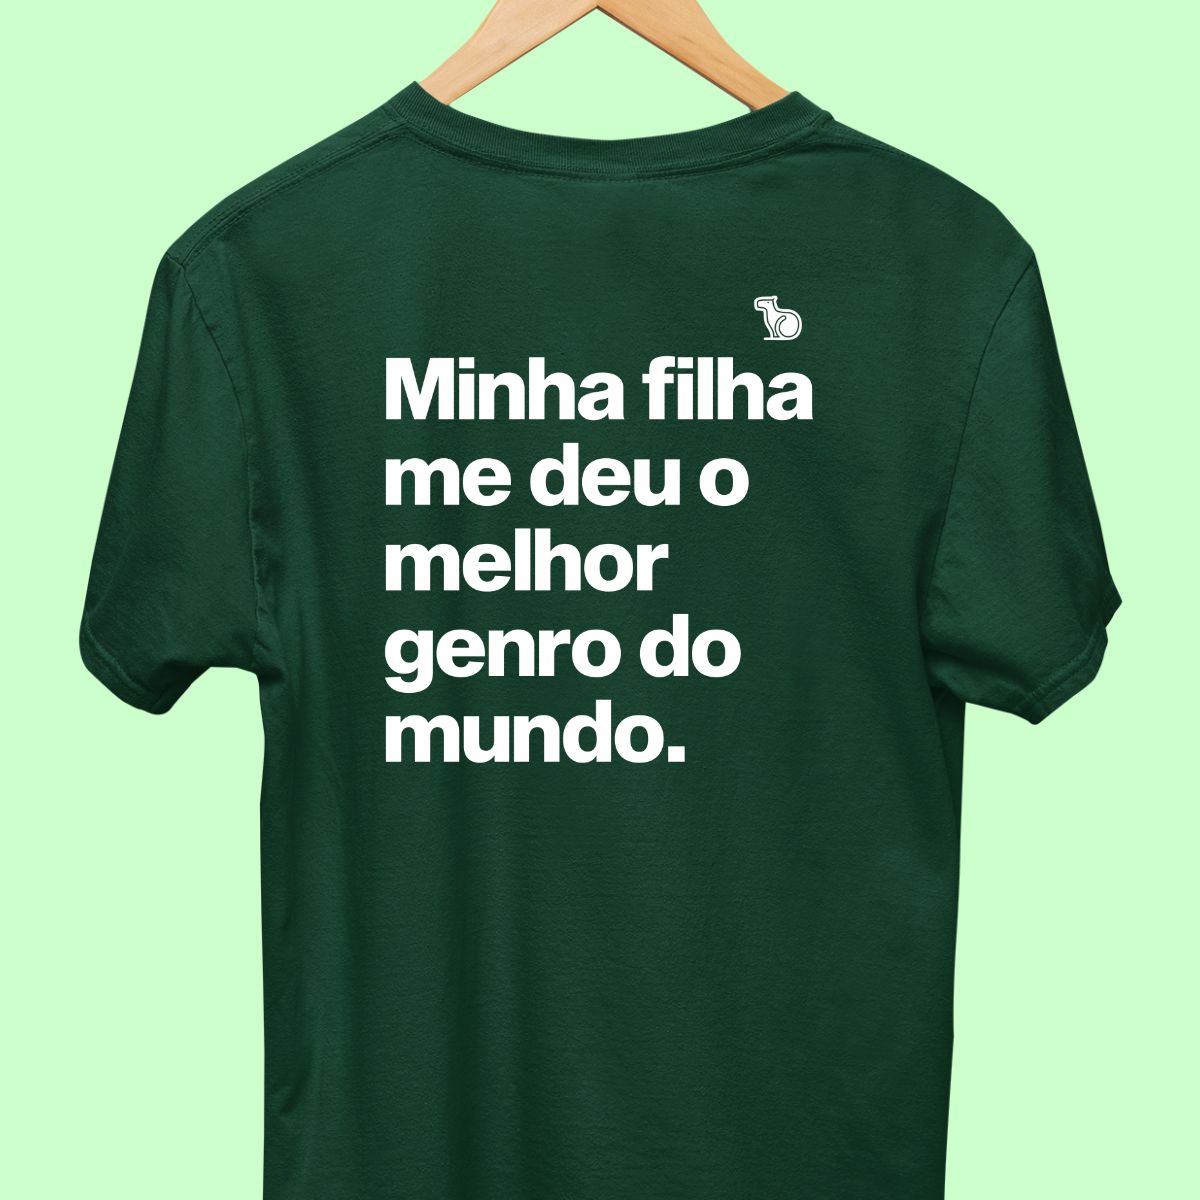 Imagem da Camiseta Masculina na cor verde com a frase "Minha filha me deu o melhor genro do mundo".